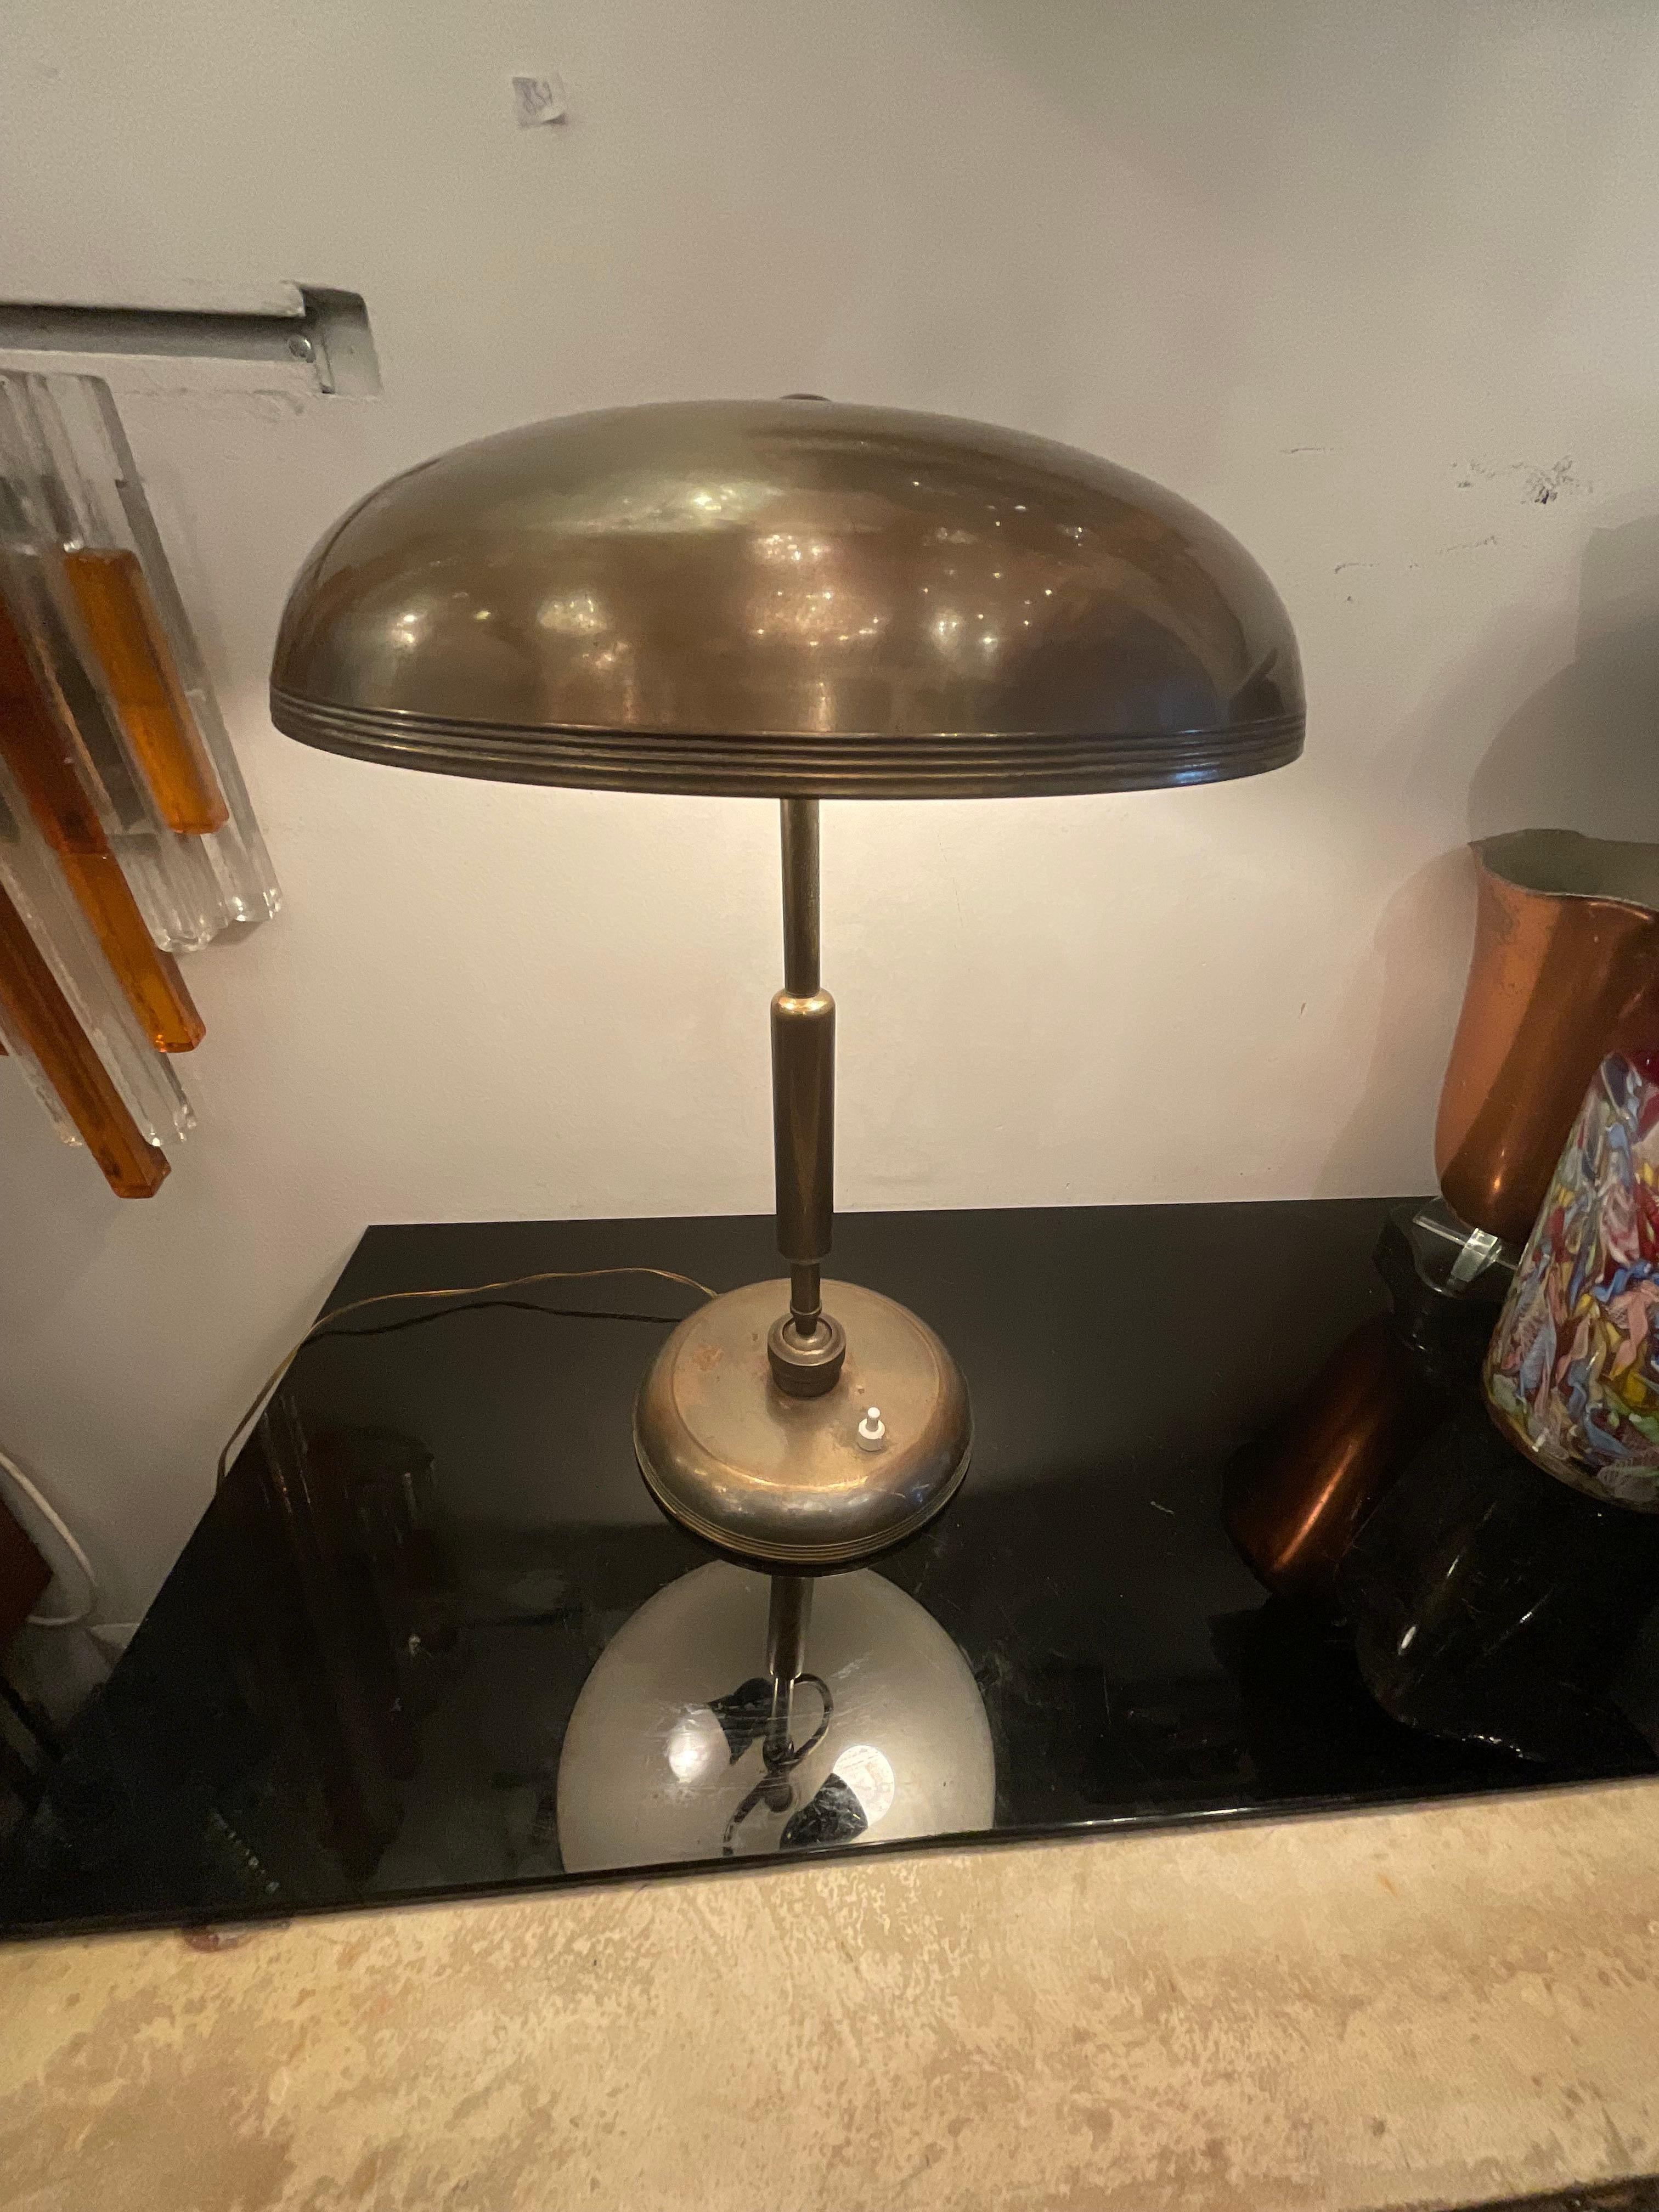 Una lampada originale disegnata da Oscar Torlasco, é prodotta dalla LUMI a Milano negli anni 50.
Una lampada studiata in tutti particolari come eleganza e funzionalità, ha diverse posizioni per fare arrivare la luce dove si desidera, sia in una